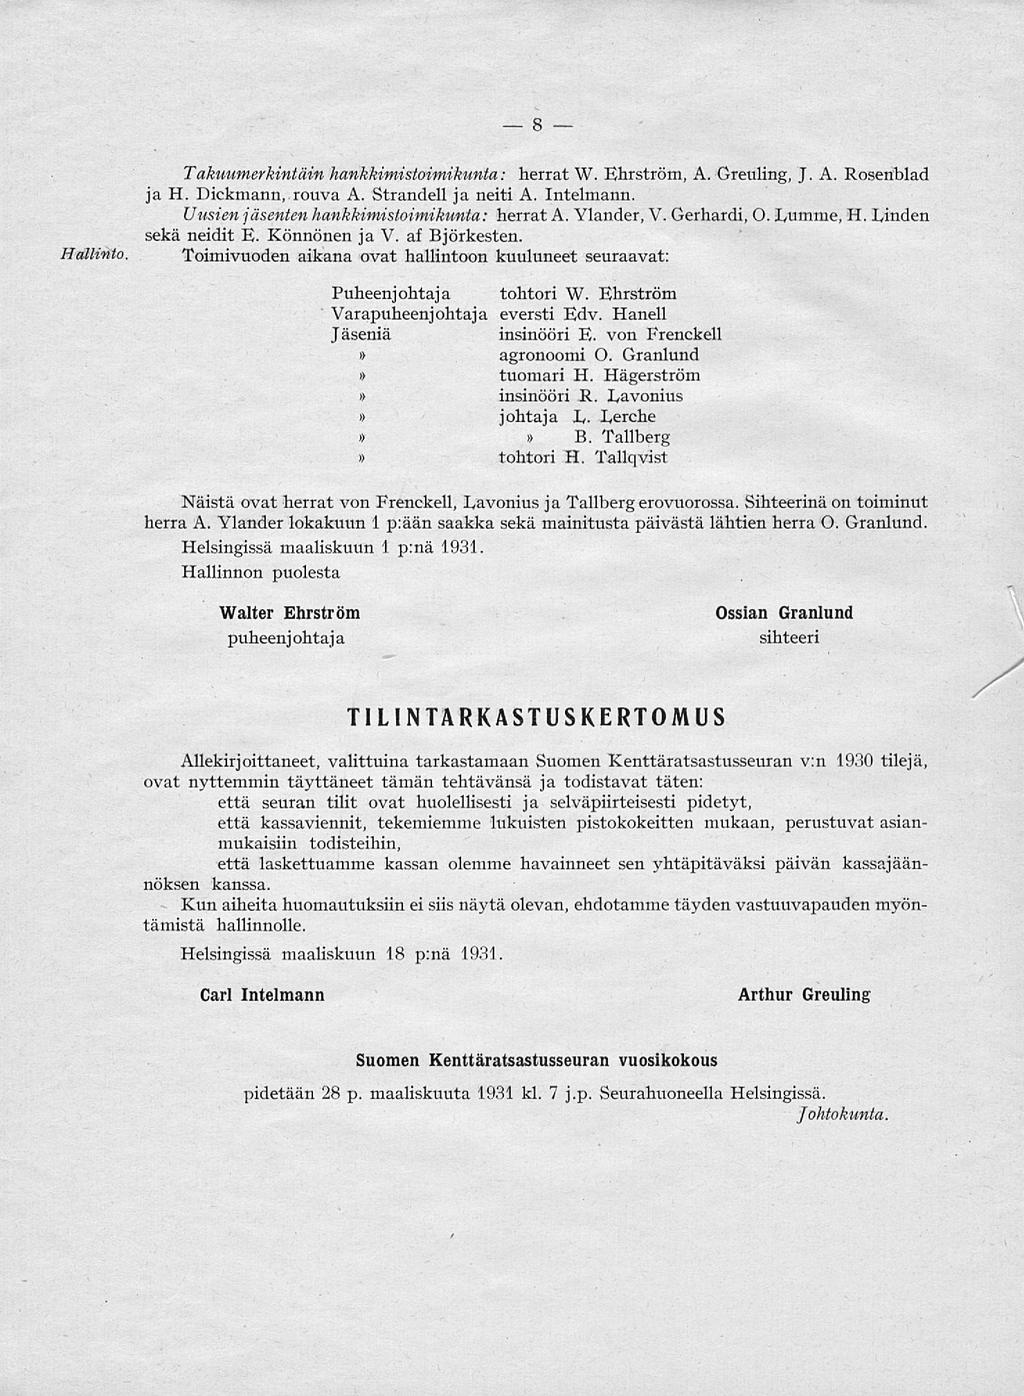 8 Hallinto Takuumerkintäin hankkimistoimikunta: herrat W. Ehrström, A. Greuling, J. A. Rosenblad ja H. Dickmann, rouva A. Strandell ja neiti A. Intelmann.